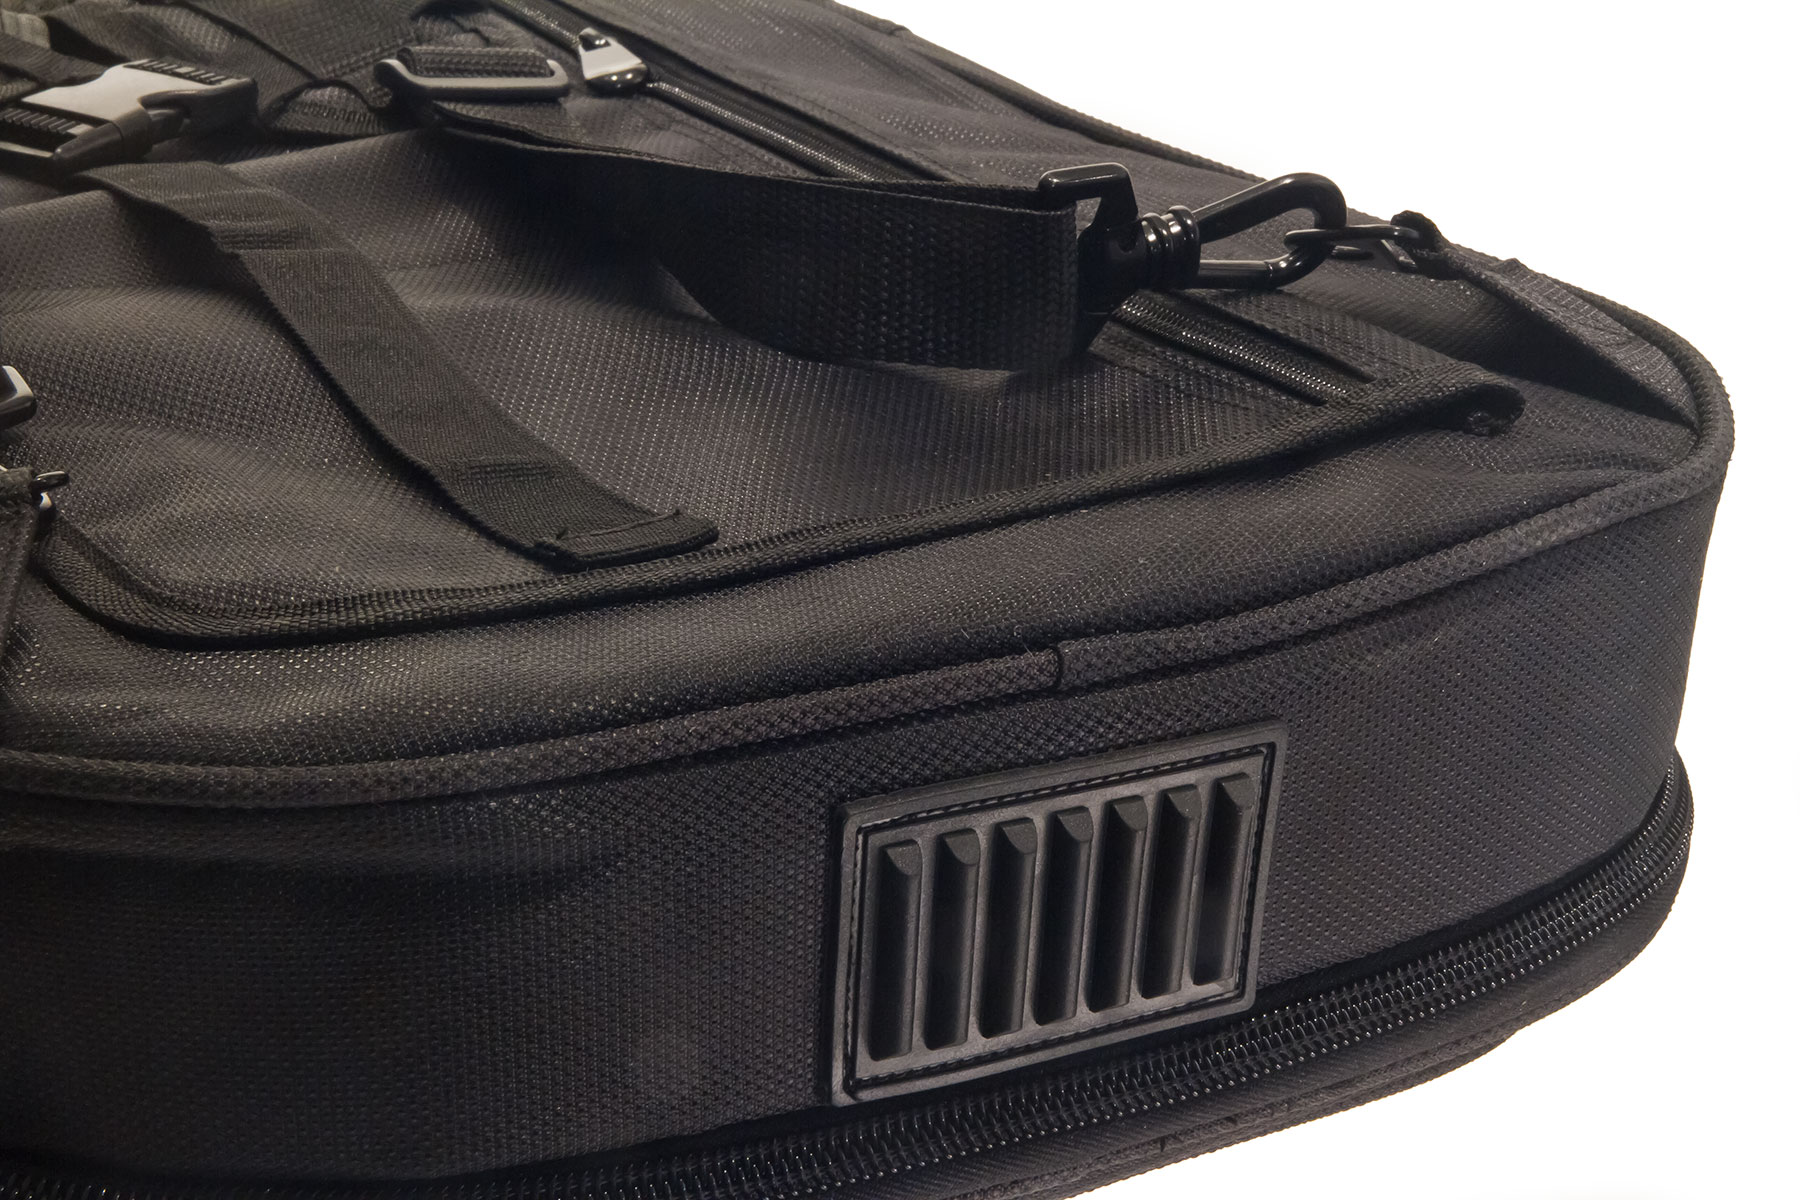 X-tone 2020 Ele-bk Light Deluxe Electric Guitar Bag Black (2083) - Tas voor Elektrische Gitaar - Variation 3